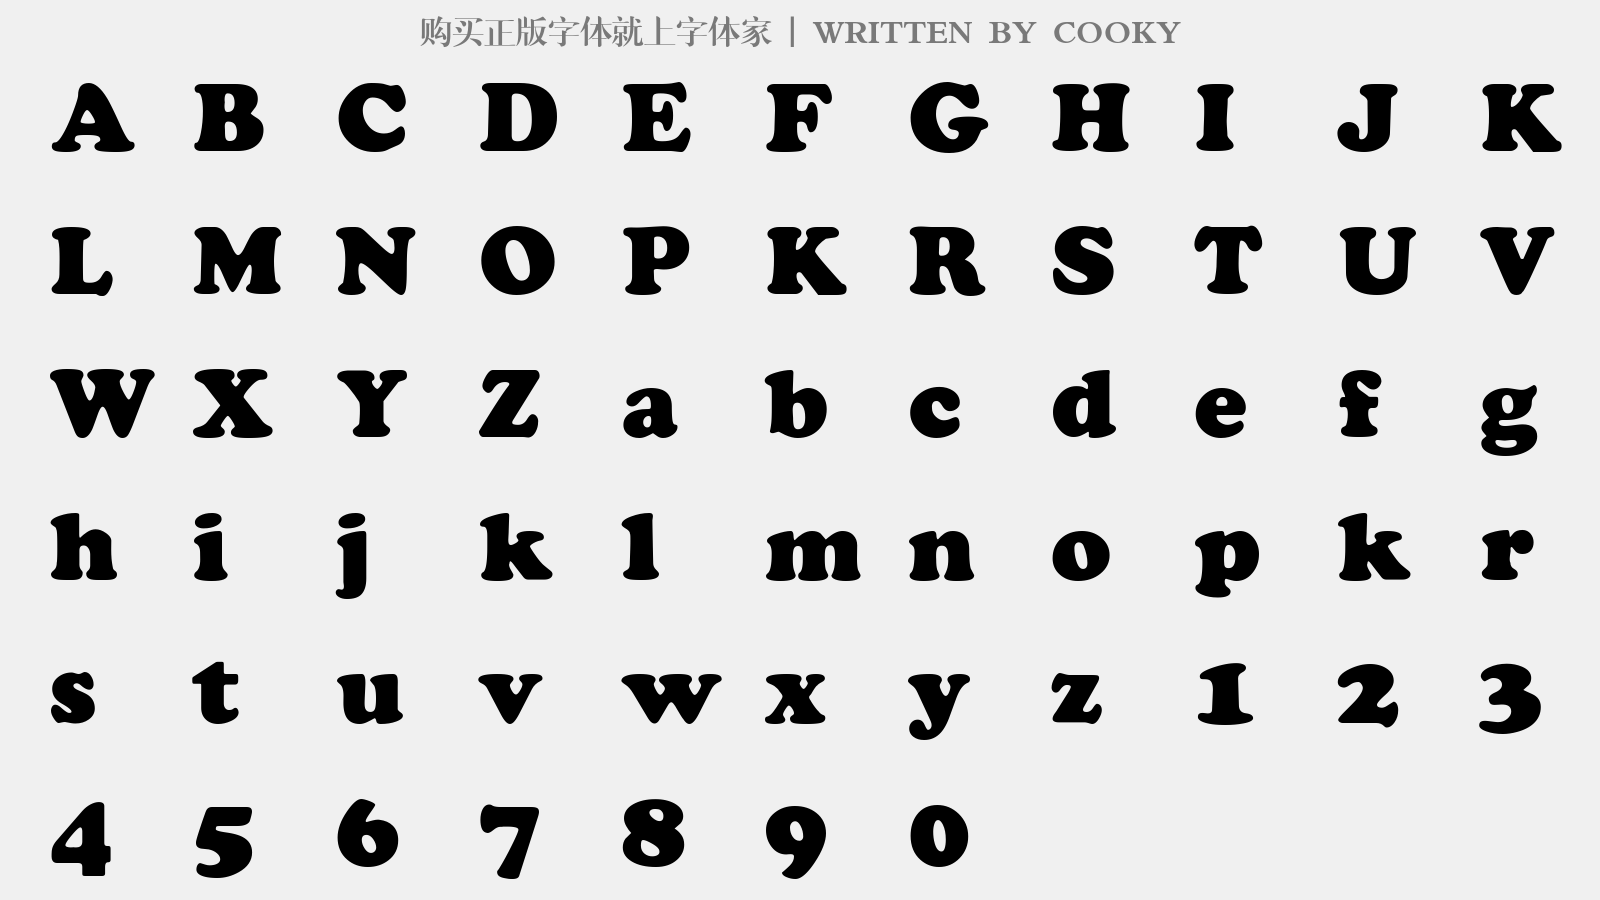 COOKY - 大写字母/小写字母/数字